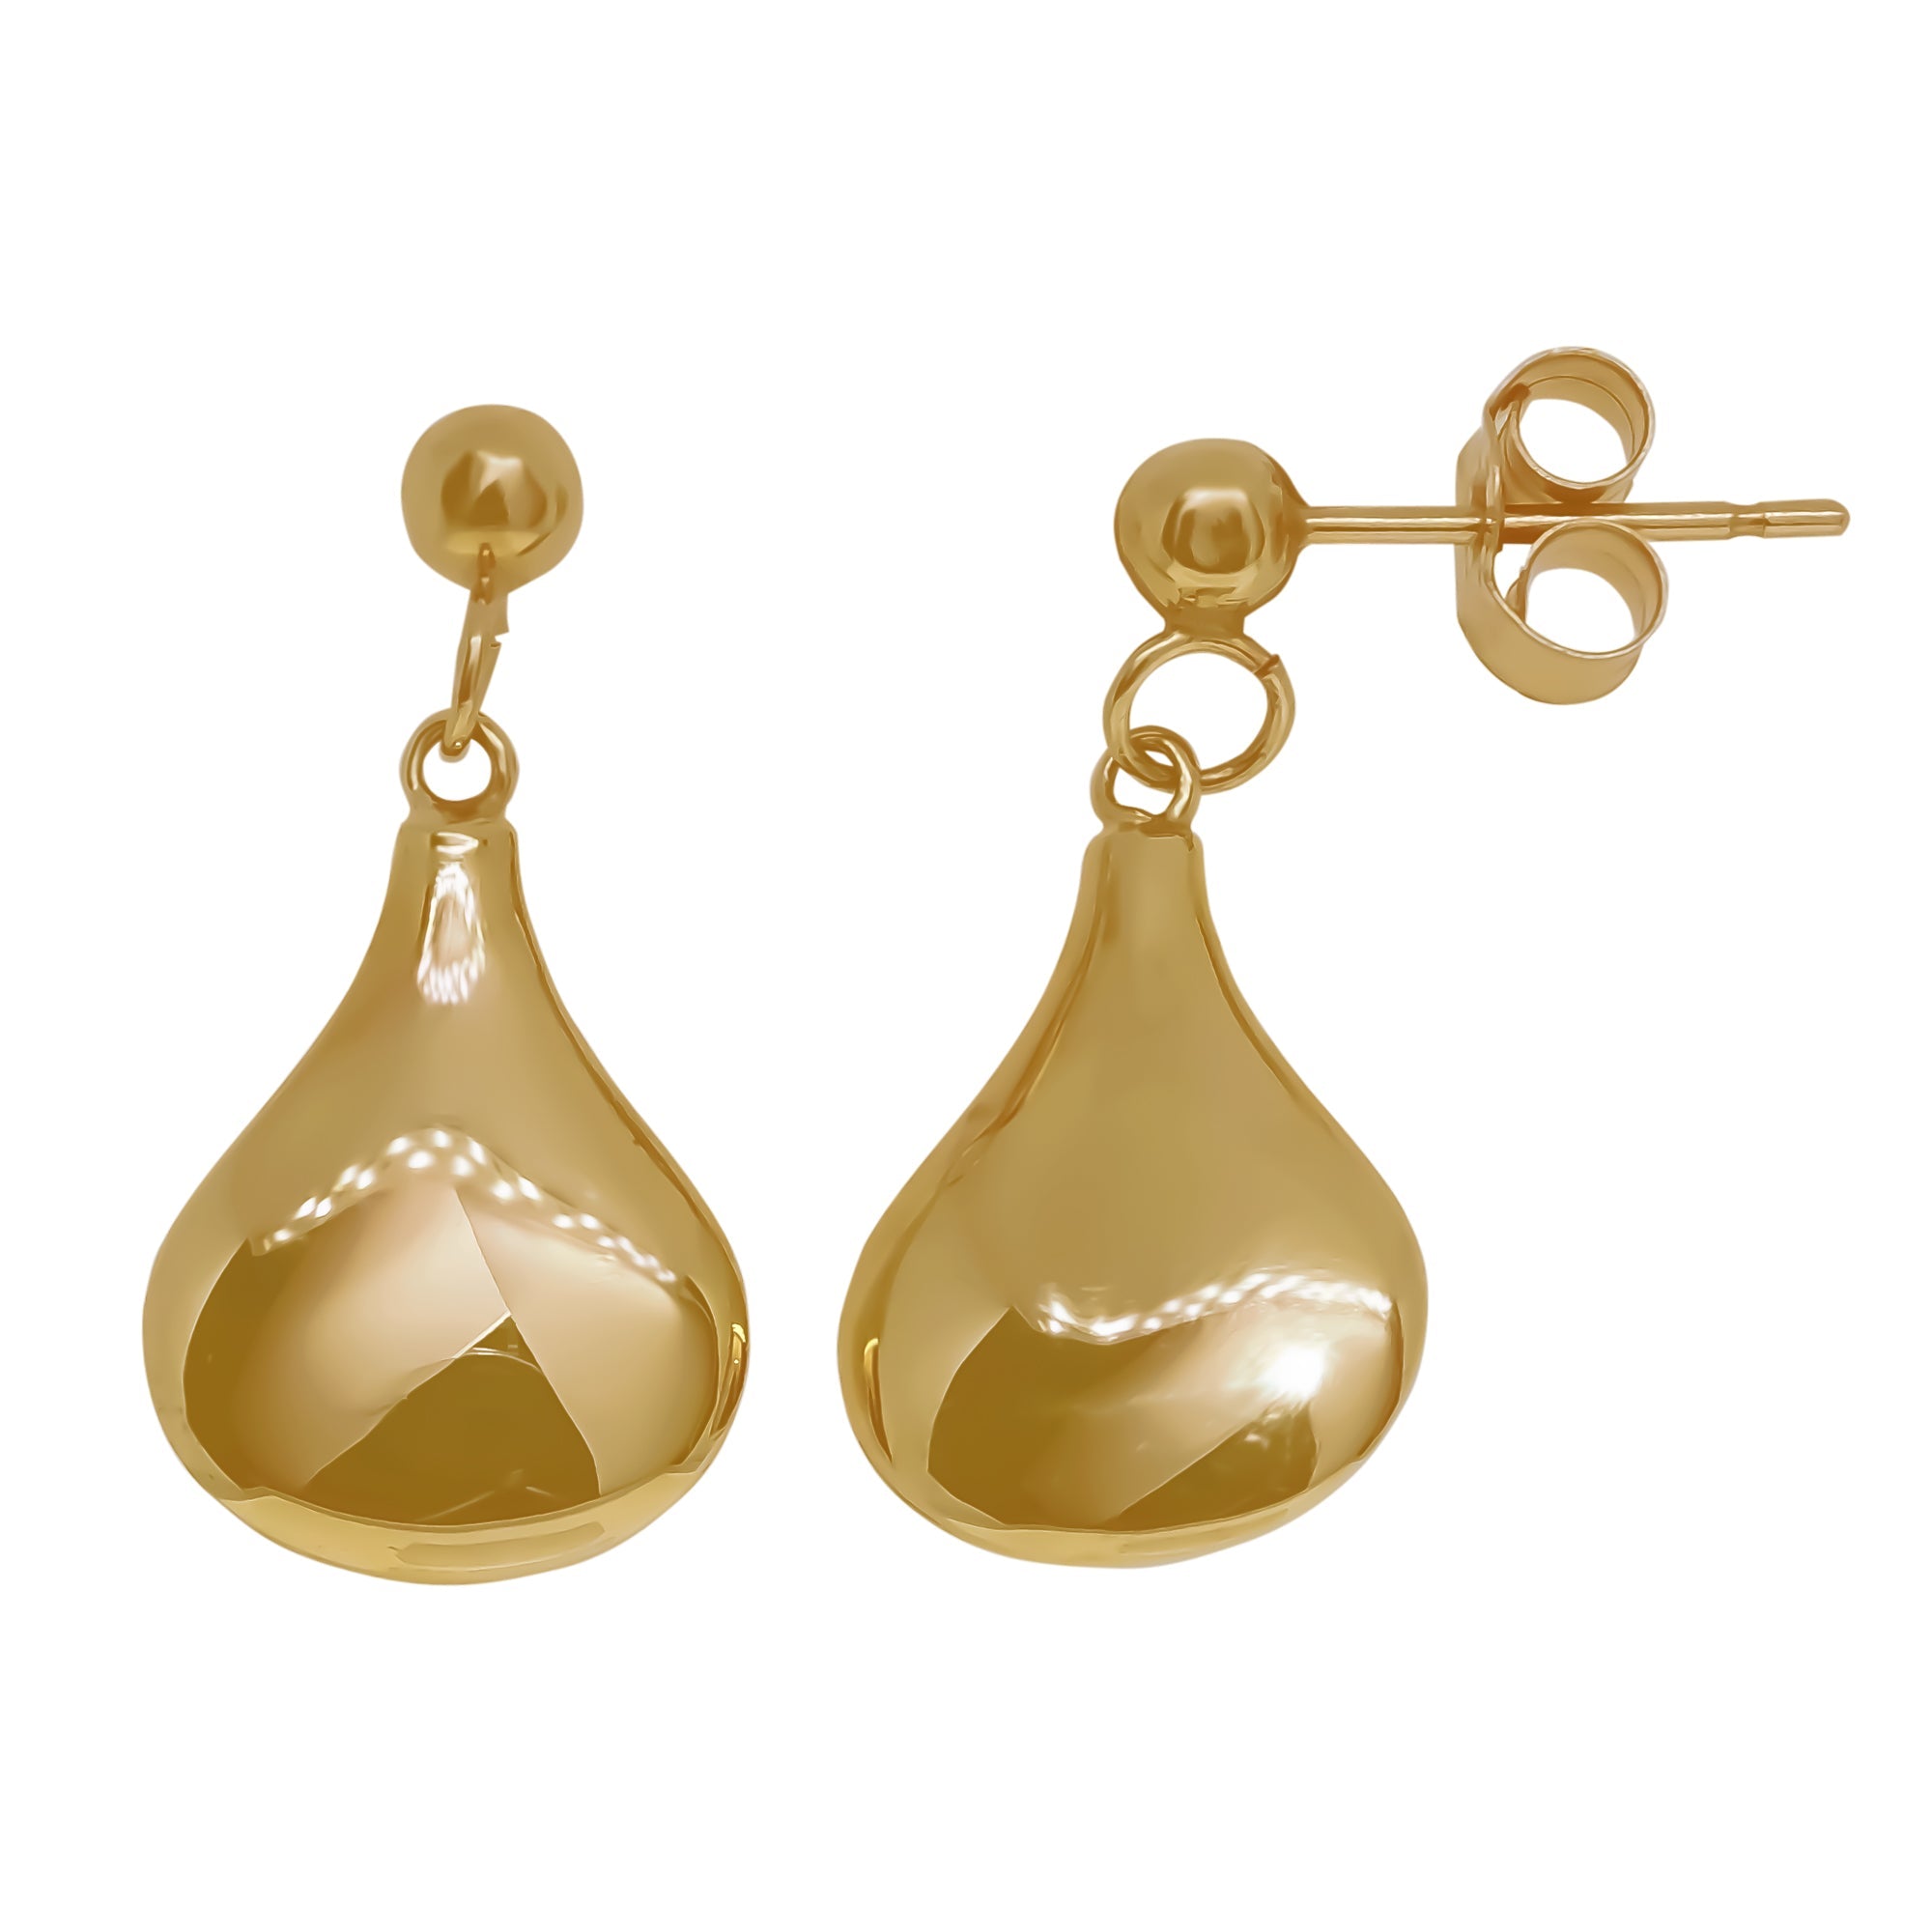 9ct gold bell drop earrings